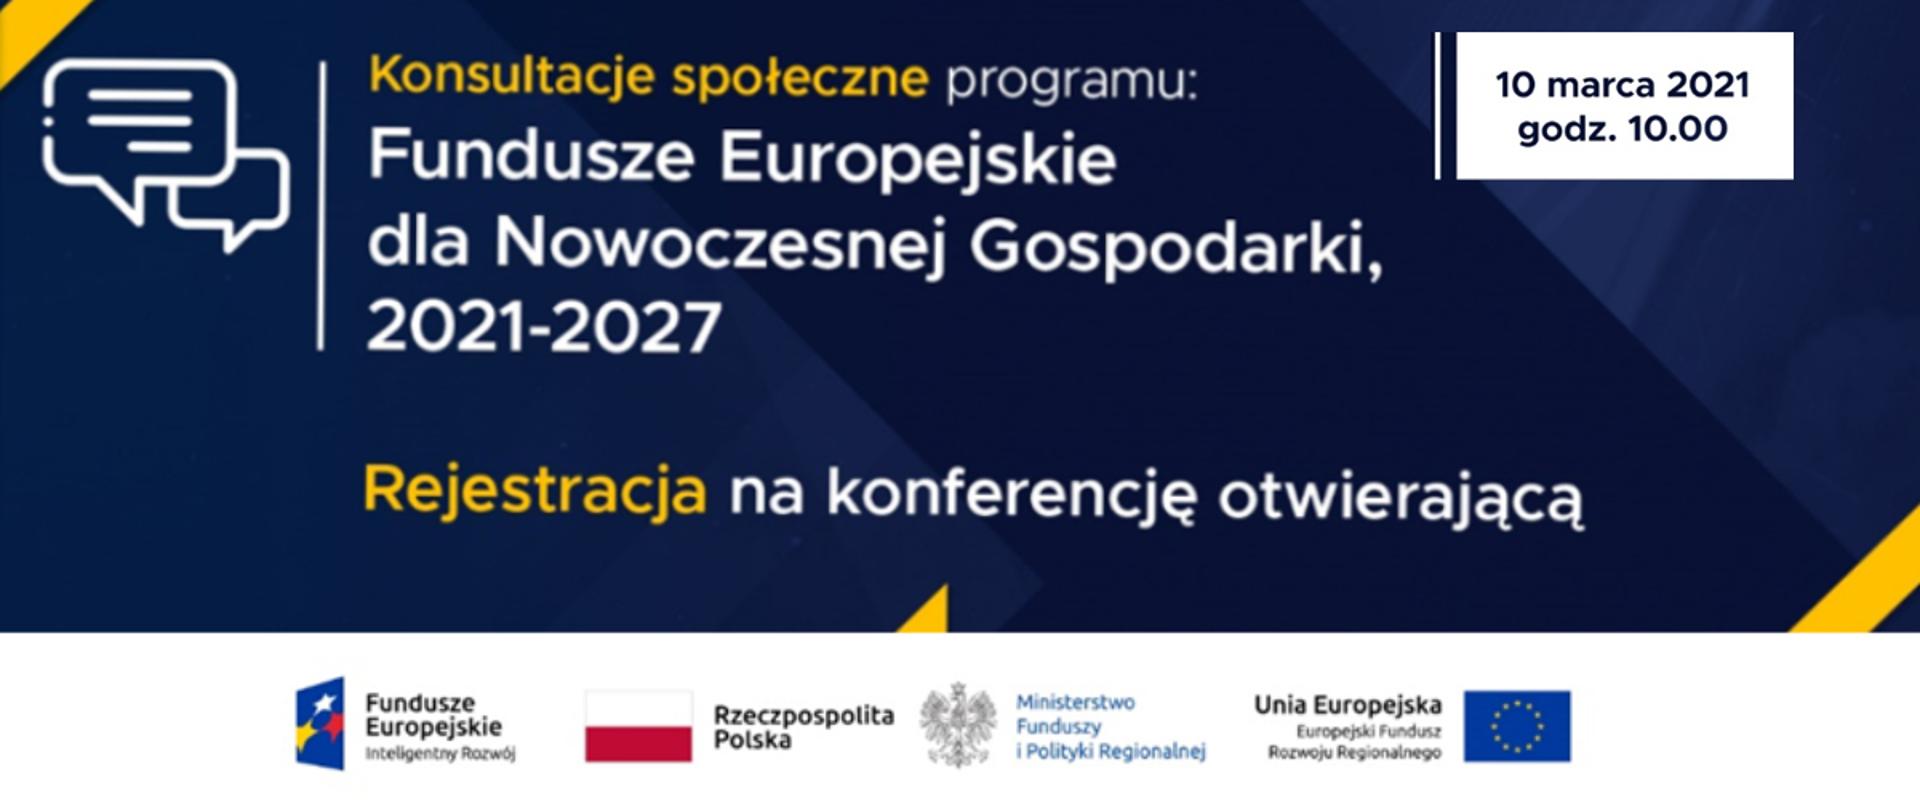 Ministerstwo Funduszy i Polityki Regionalnej zaprasza na konferencję otwierającą konsultacje społeczne Programu Fundusze Europejskie dla Nowoczesnej Gospodarki 2021-2027